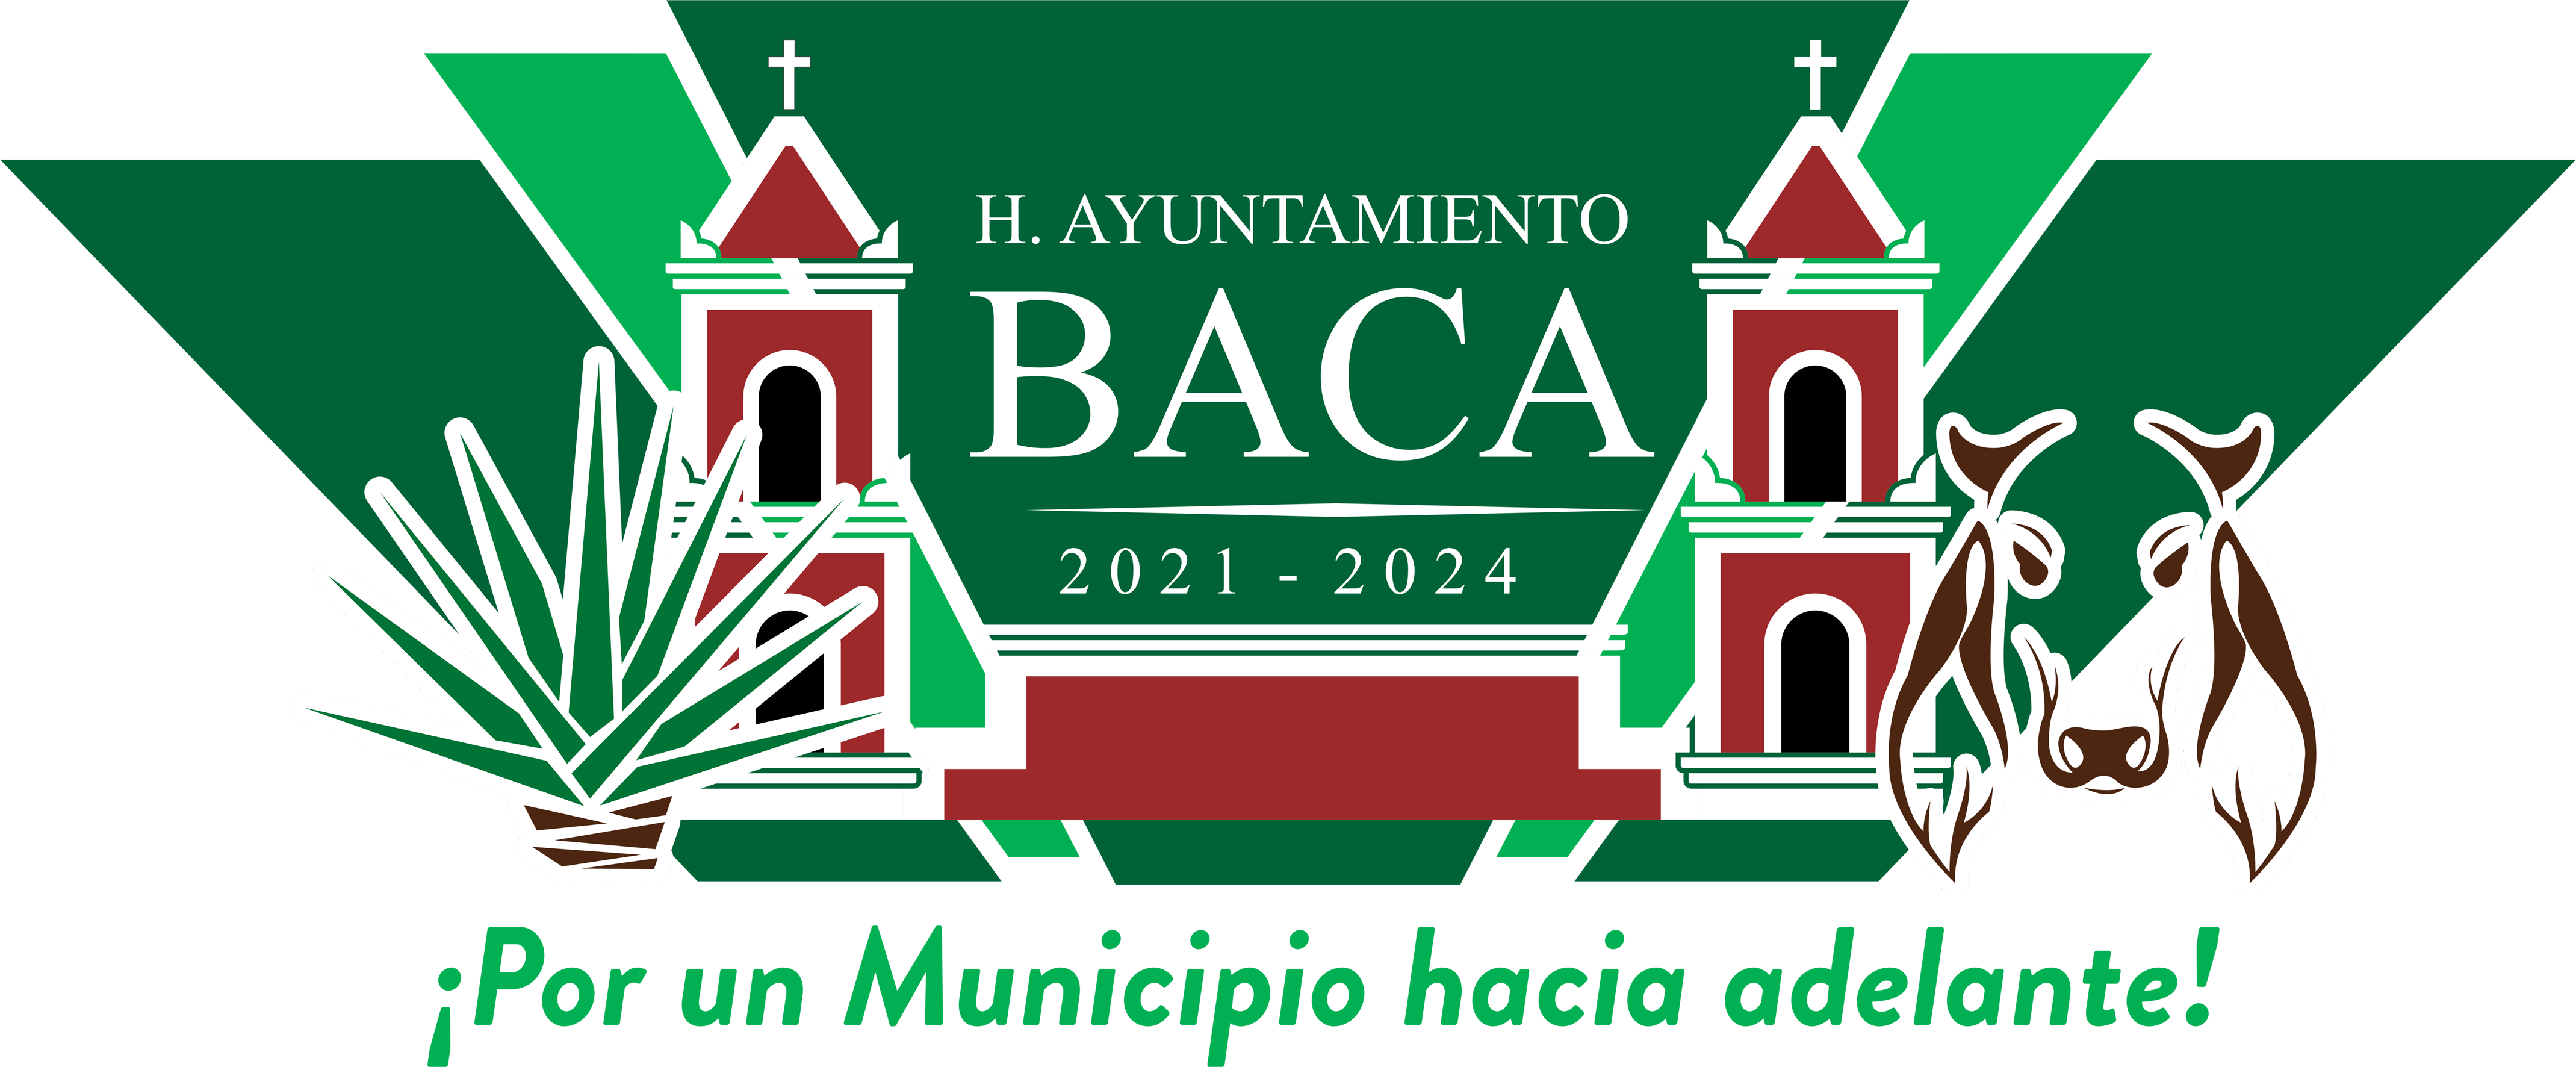 H. Ayuntamiento de Baca